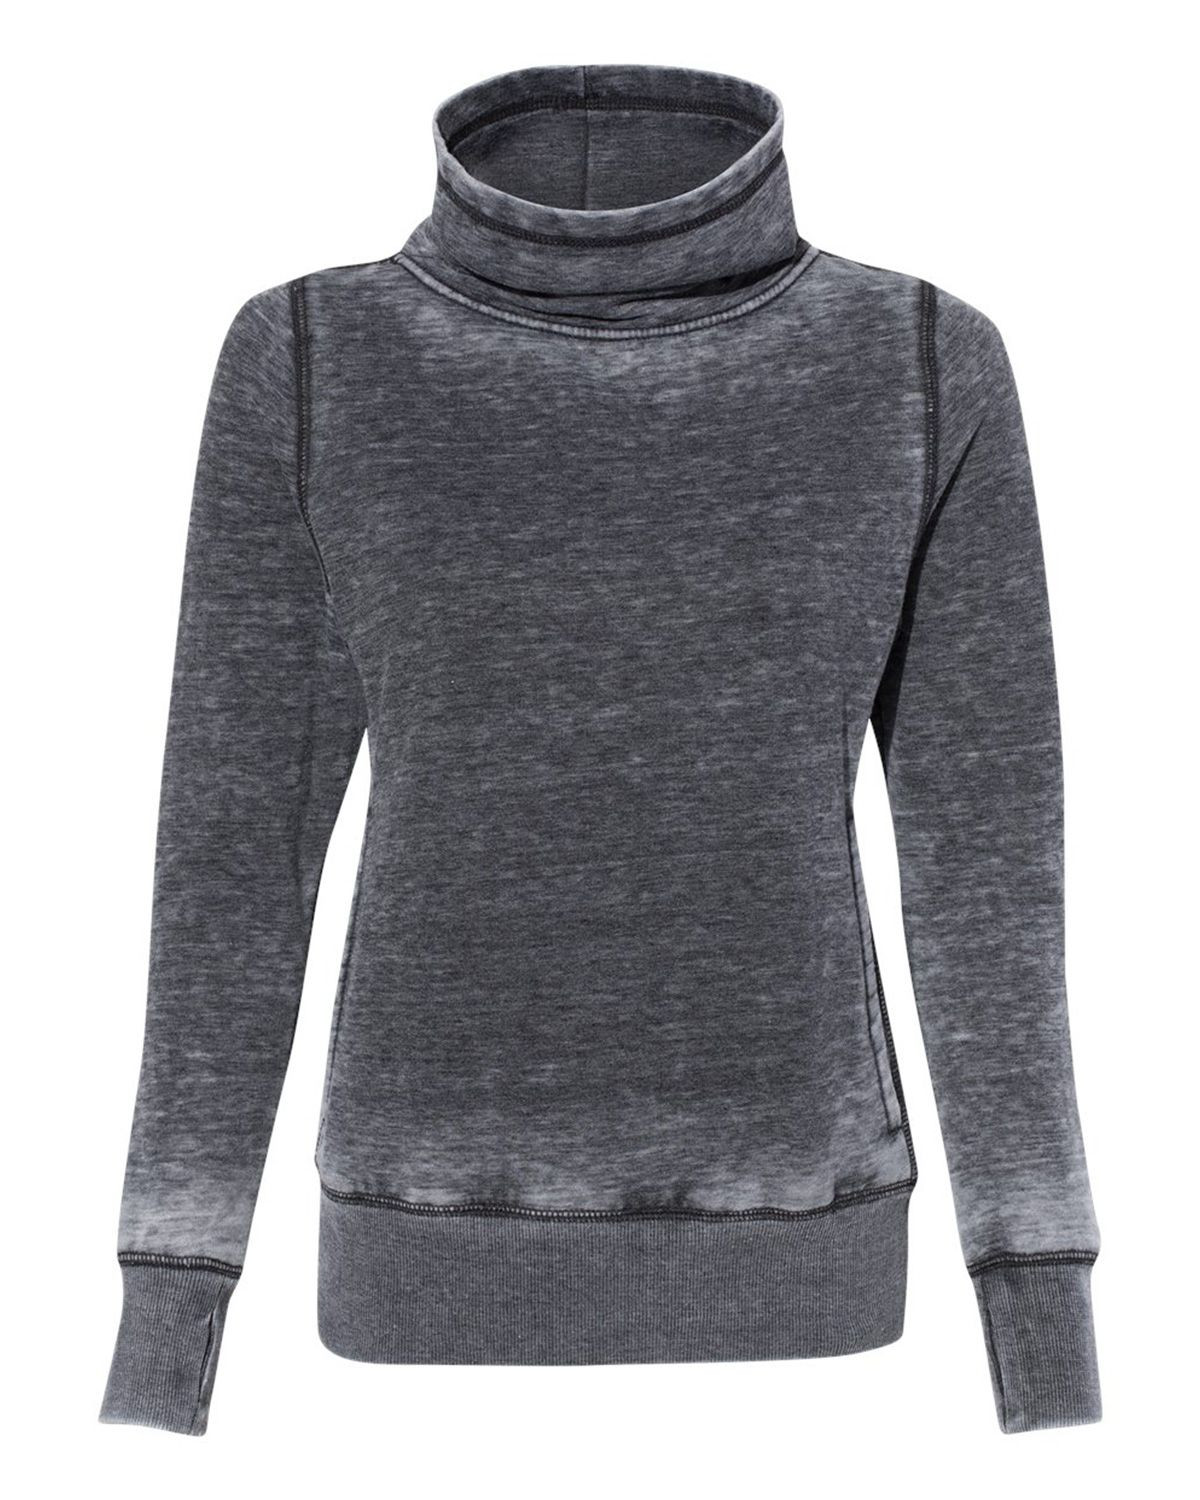 J America 8930 Women's Vintage Zen Fleece Cowl Neck Sweatshirt - Dark Smoke - S #vintage